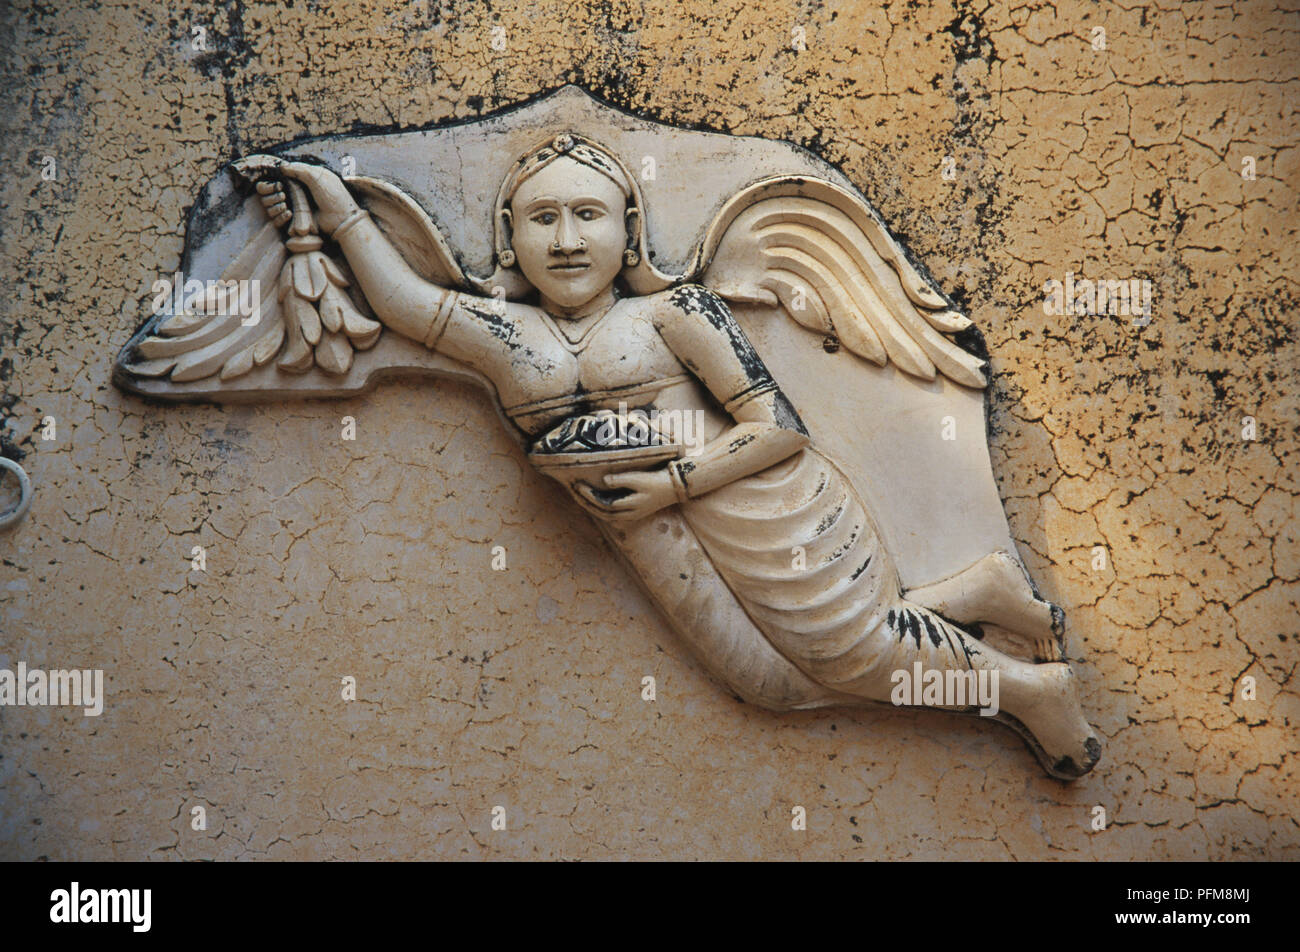 Incisione su un ''angel'' presso il Palazzo di Città, Udaipur. Fondata nel 1568 Udaipur (la Venezia dell'Est) linee le rive del lago Pichola in Sud Rajasthan. Ottobre 30th, 1998. Foto Stock